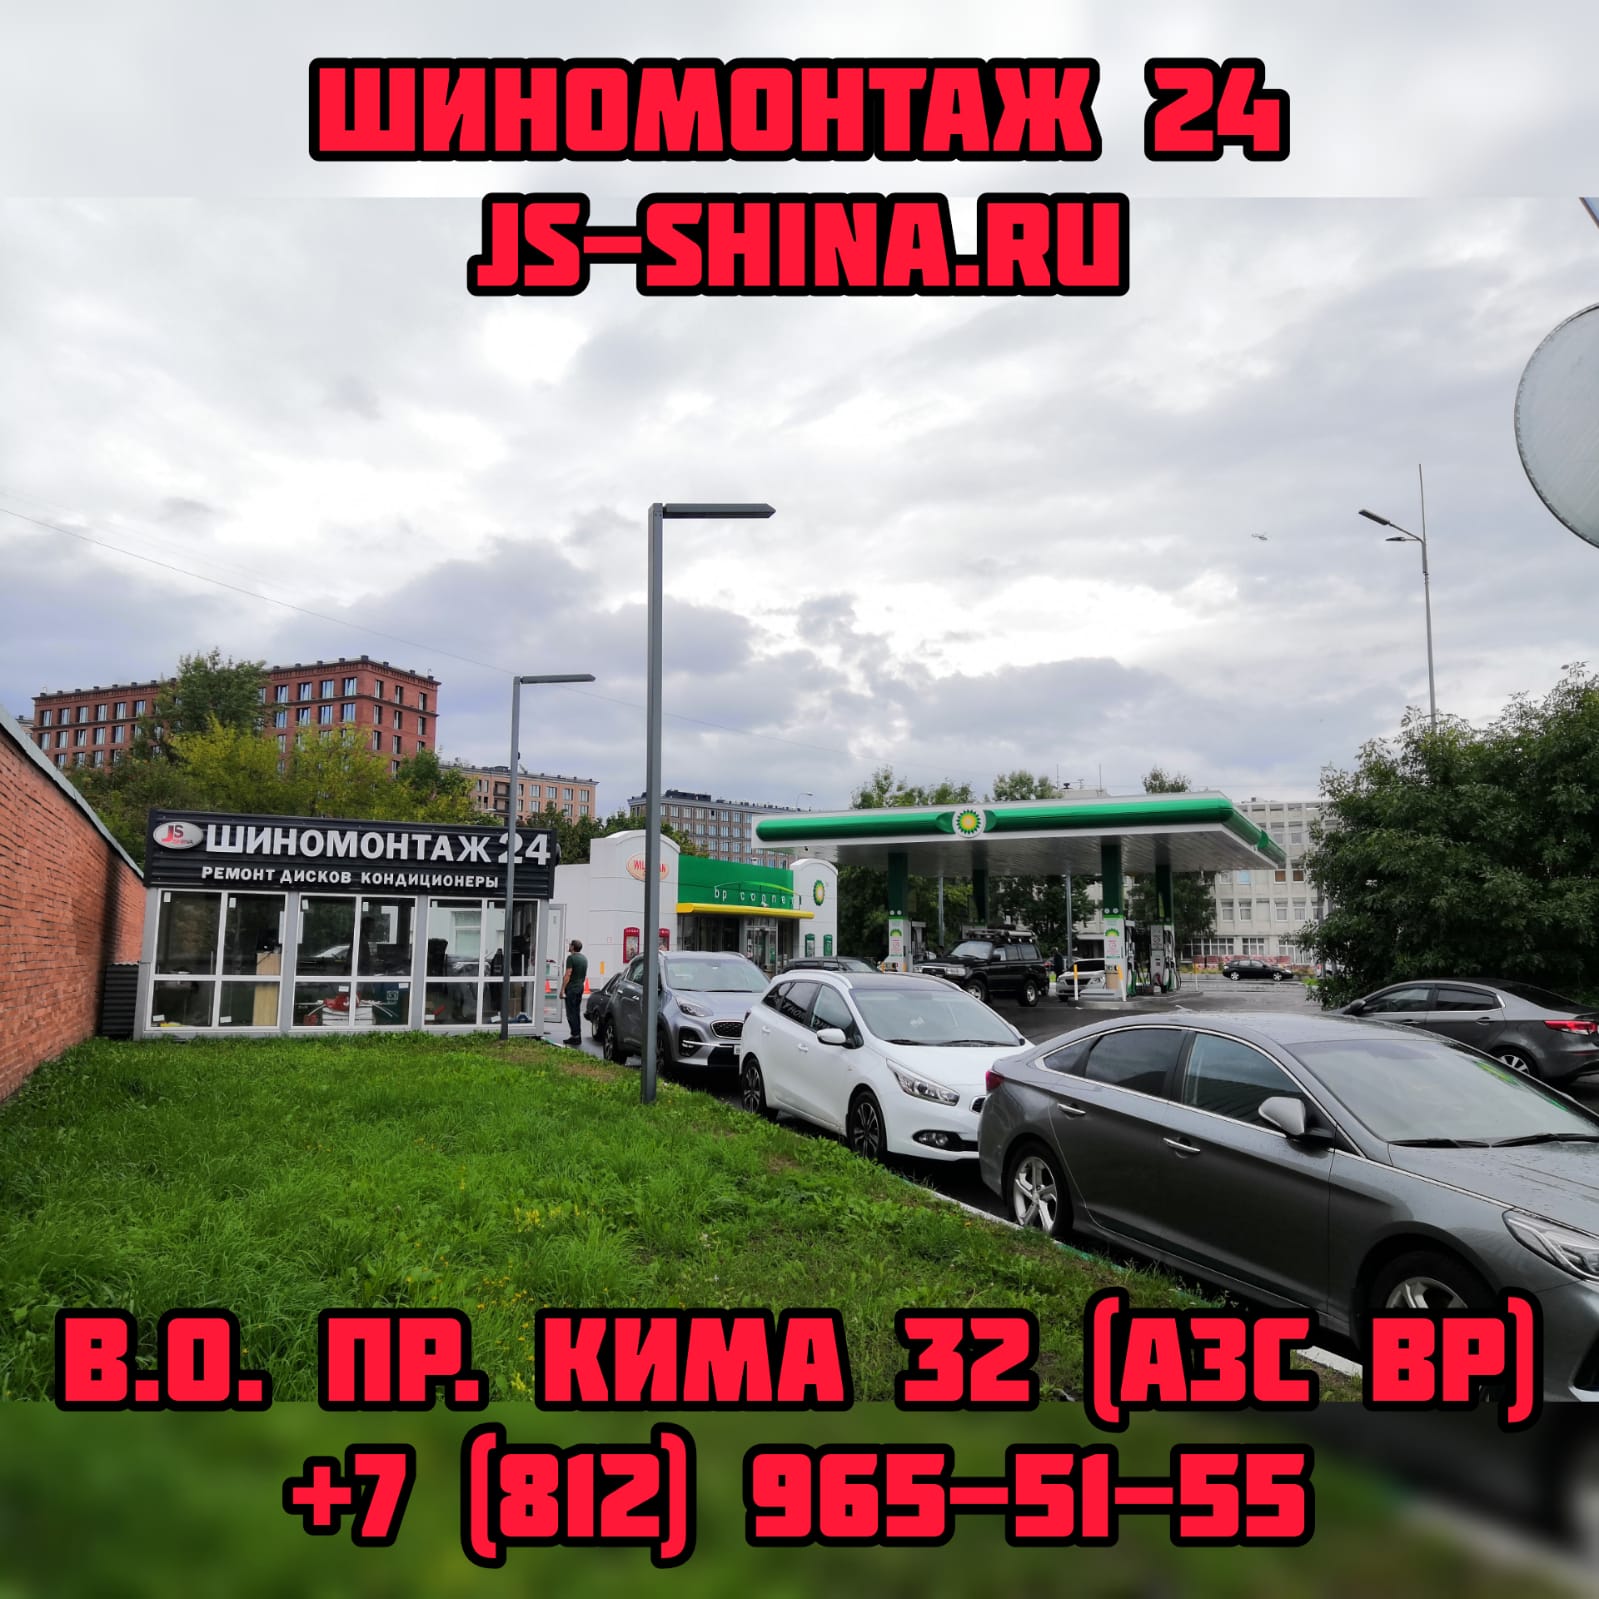 Шиномонтаж 24 часа в Санкт-Петербурге JS-Shina правка ремонт дисков